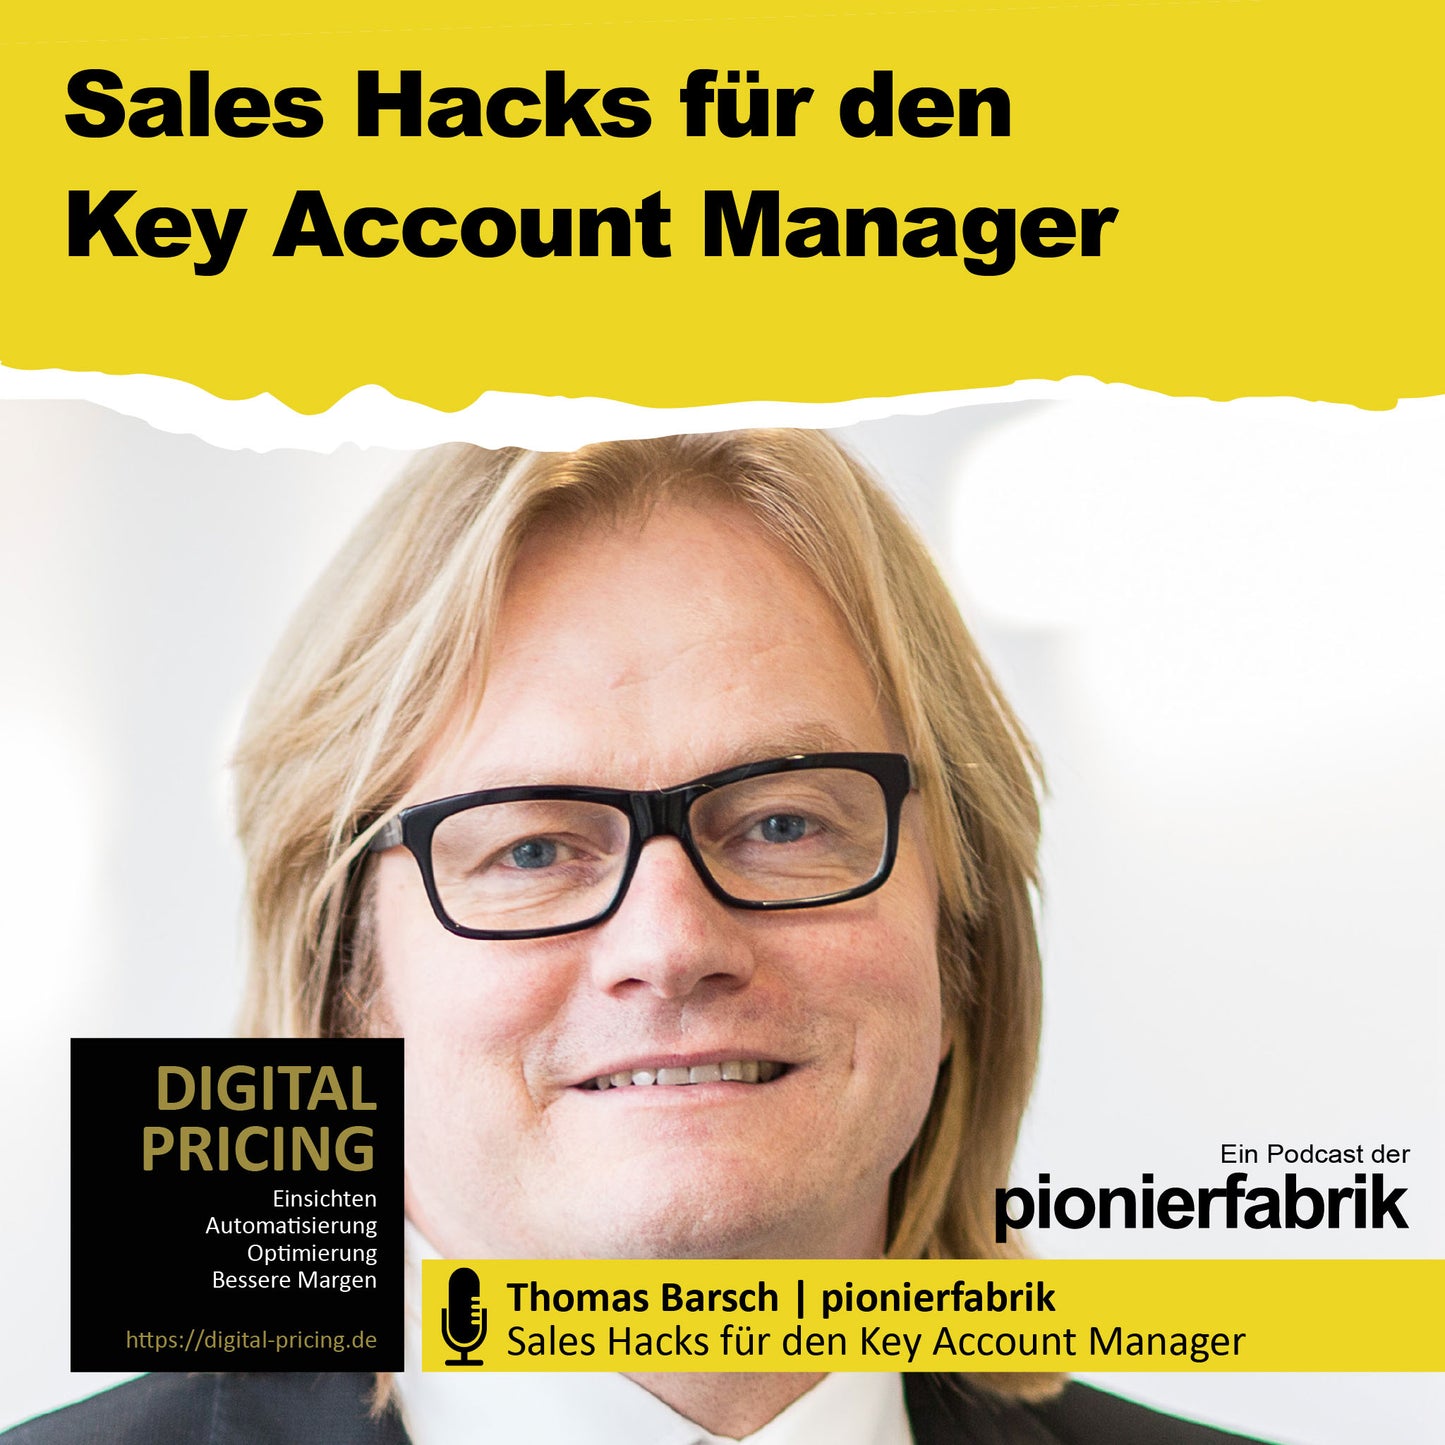 19.03.2021 | "Sales Hacks für den Key Account Manager"